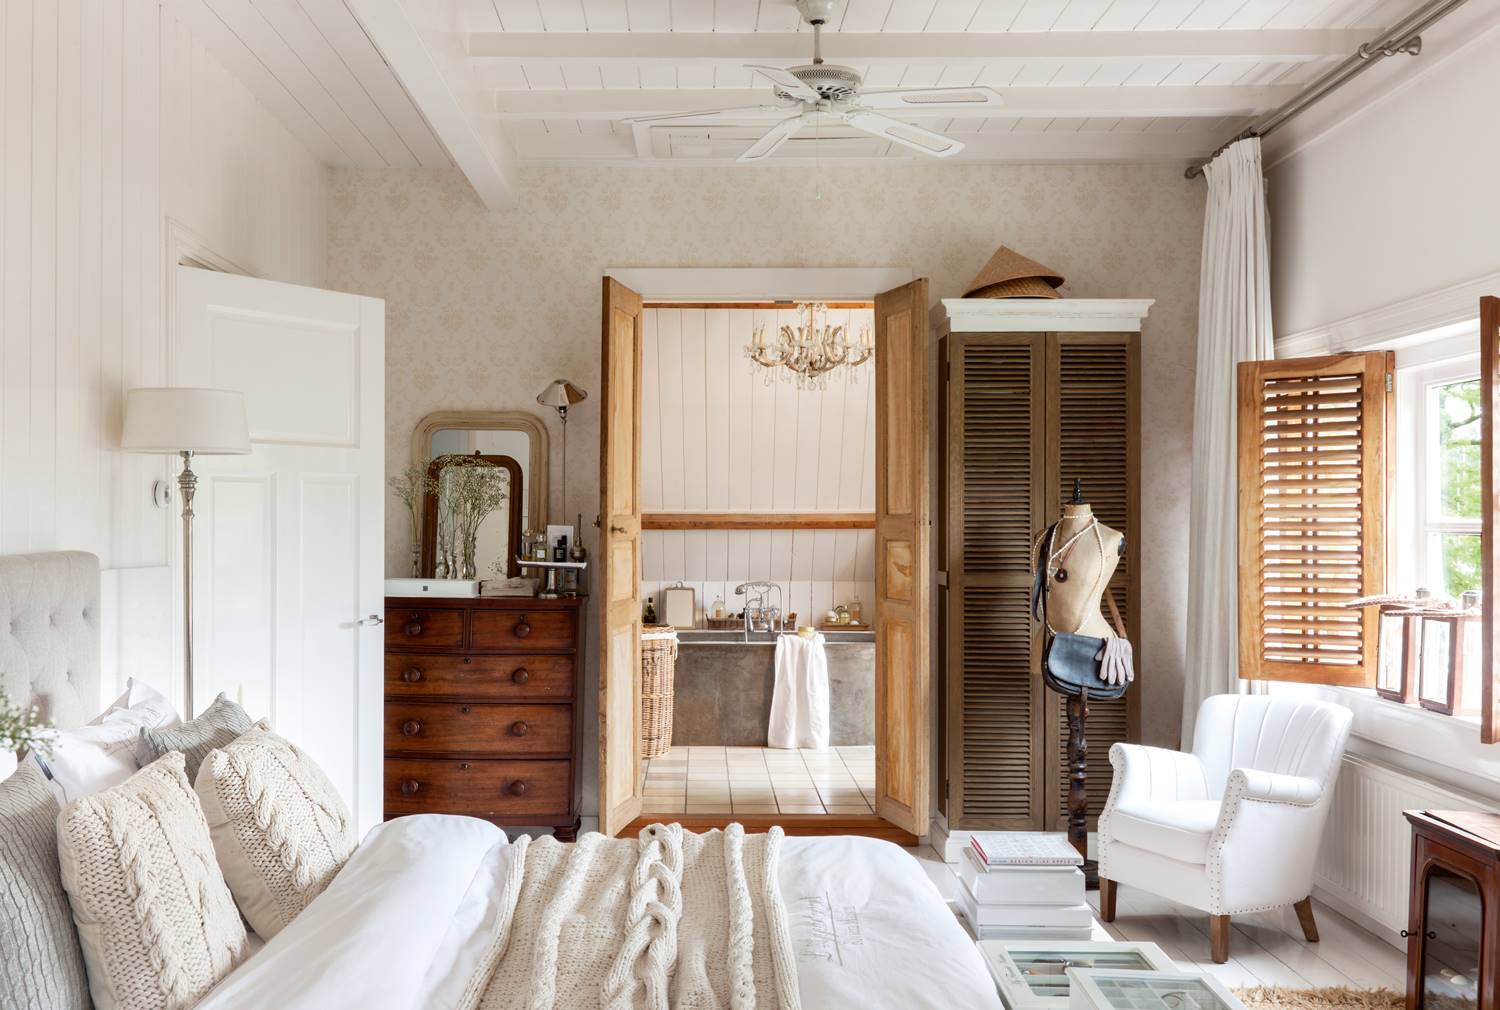 Dormitorio clásico romántico en blanco. 